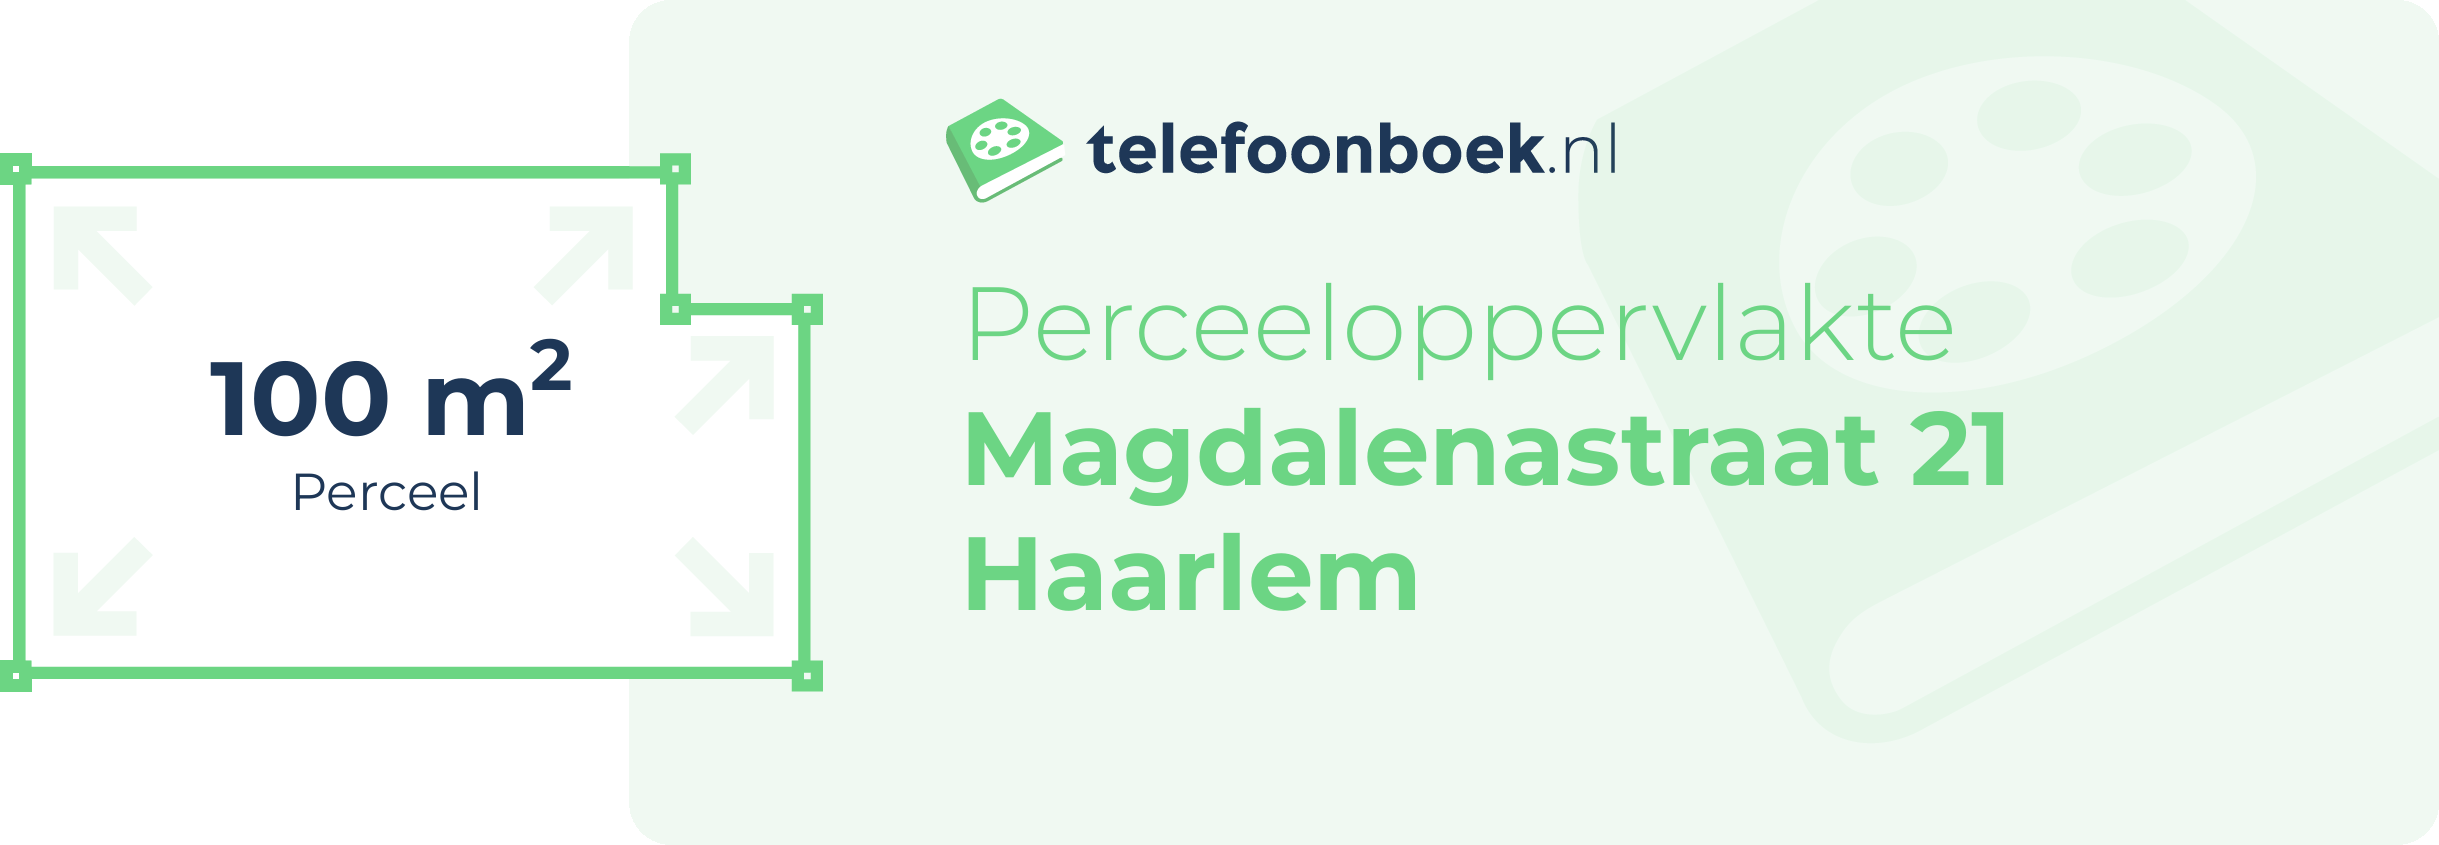 Perceeloppervlakte Magdalenastraat 21 Haarlem